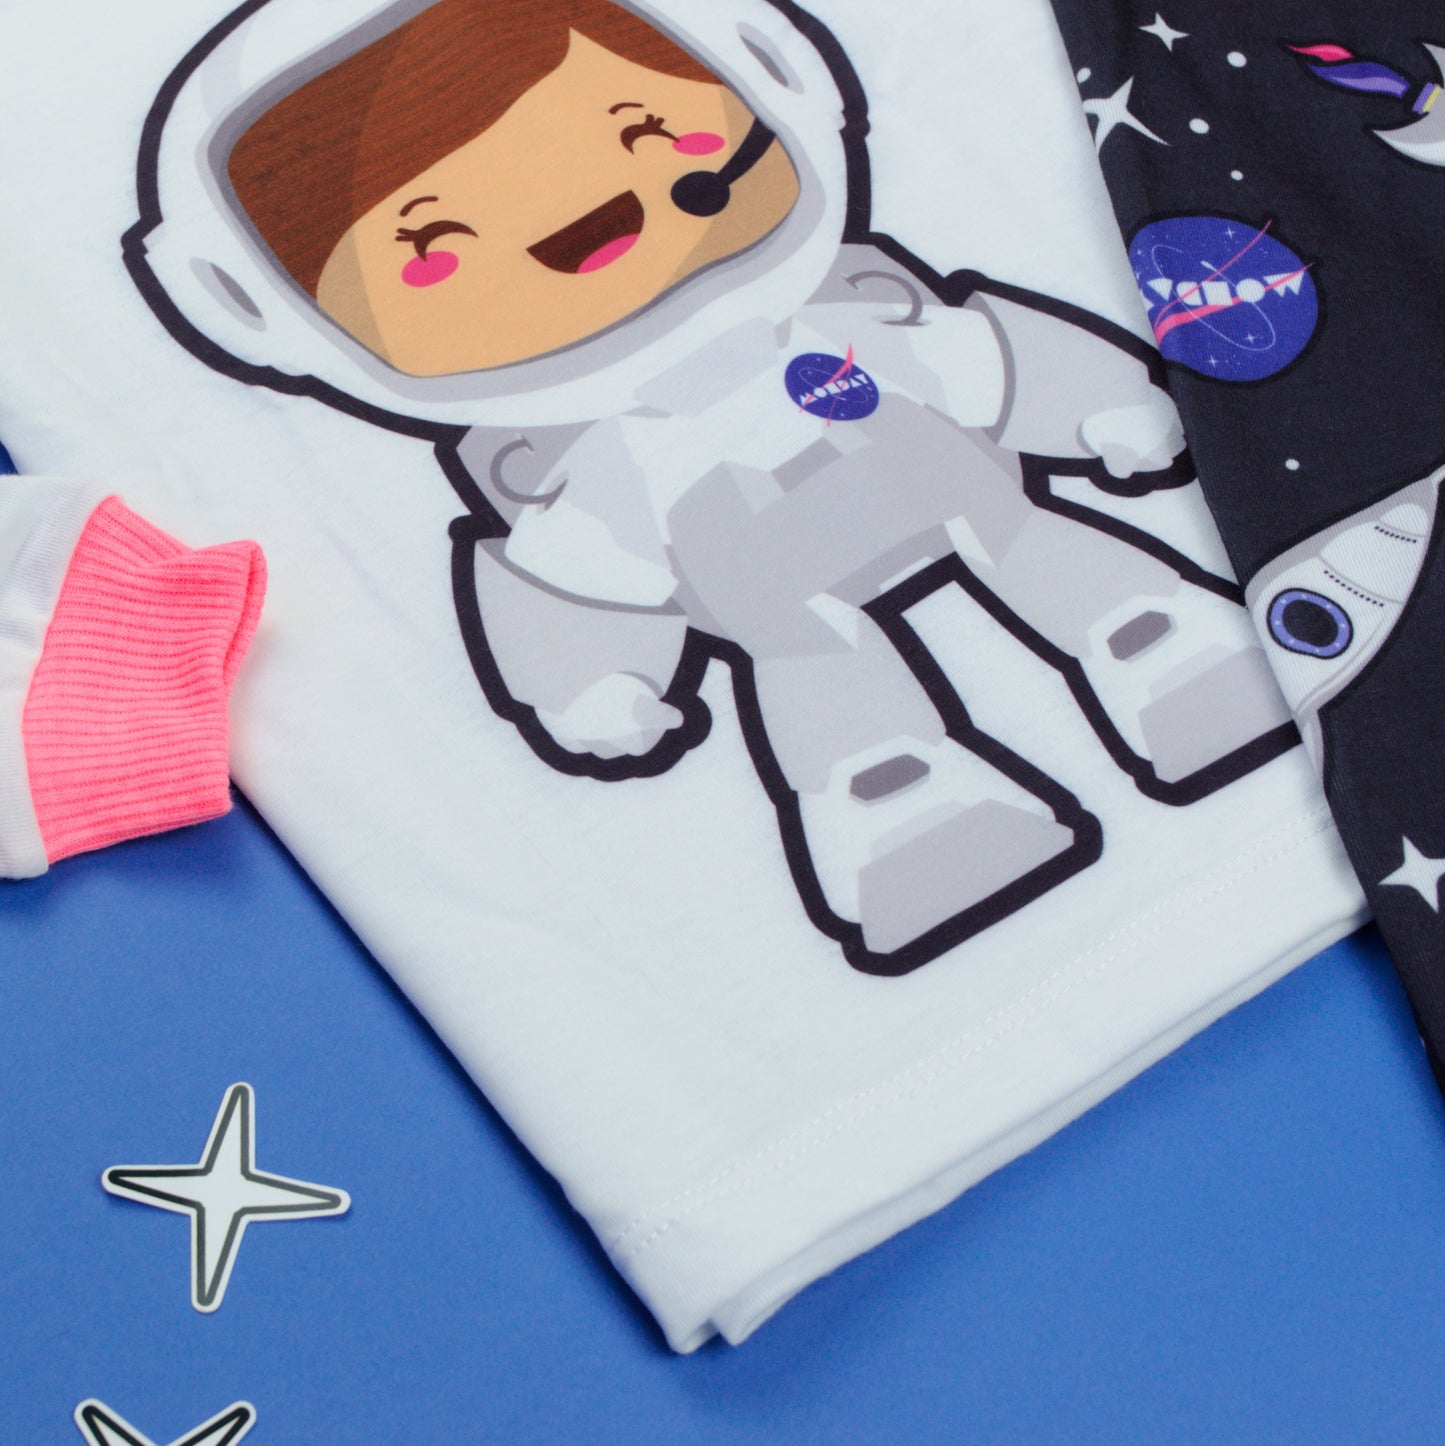 Pijama Astronauta Niña